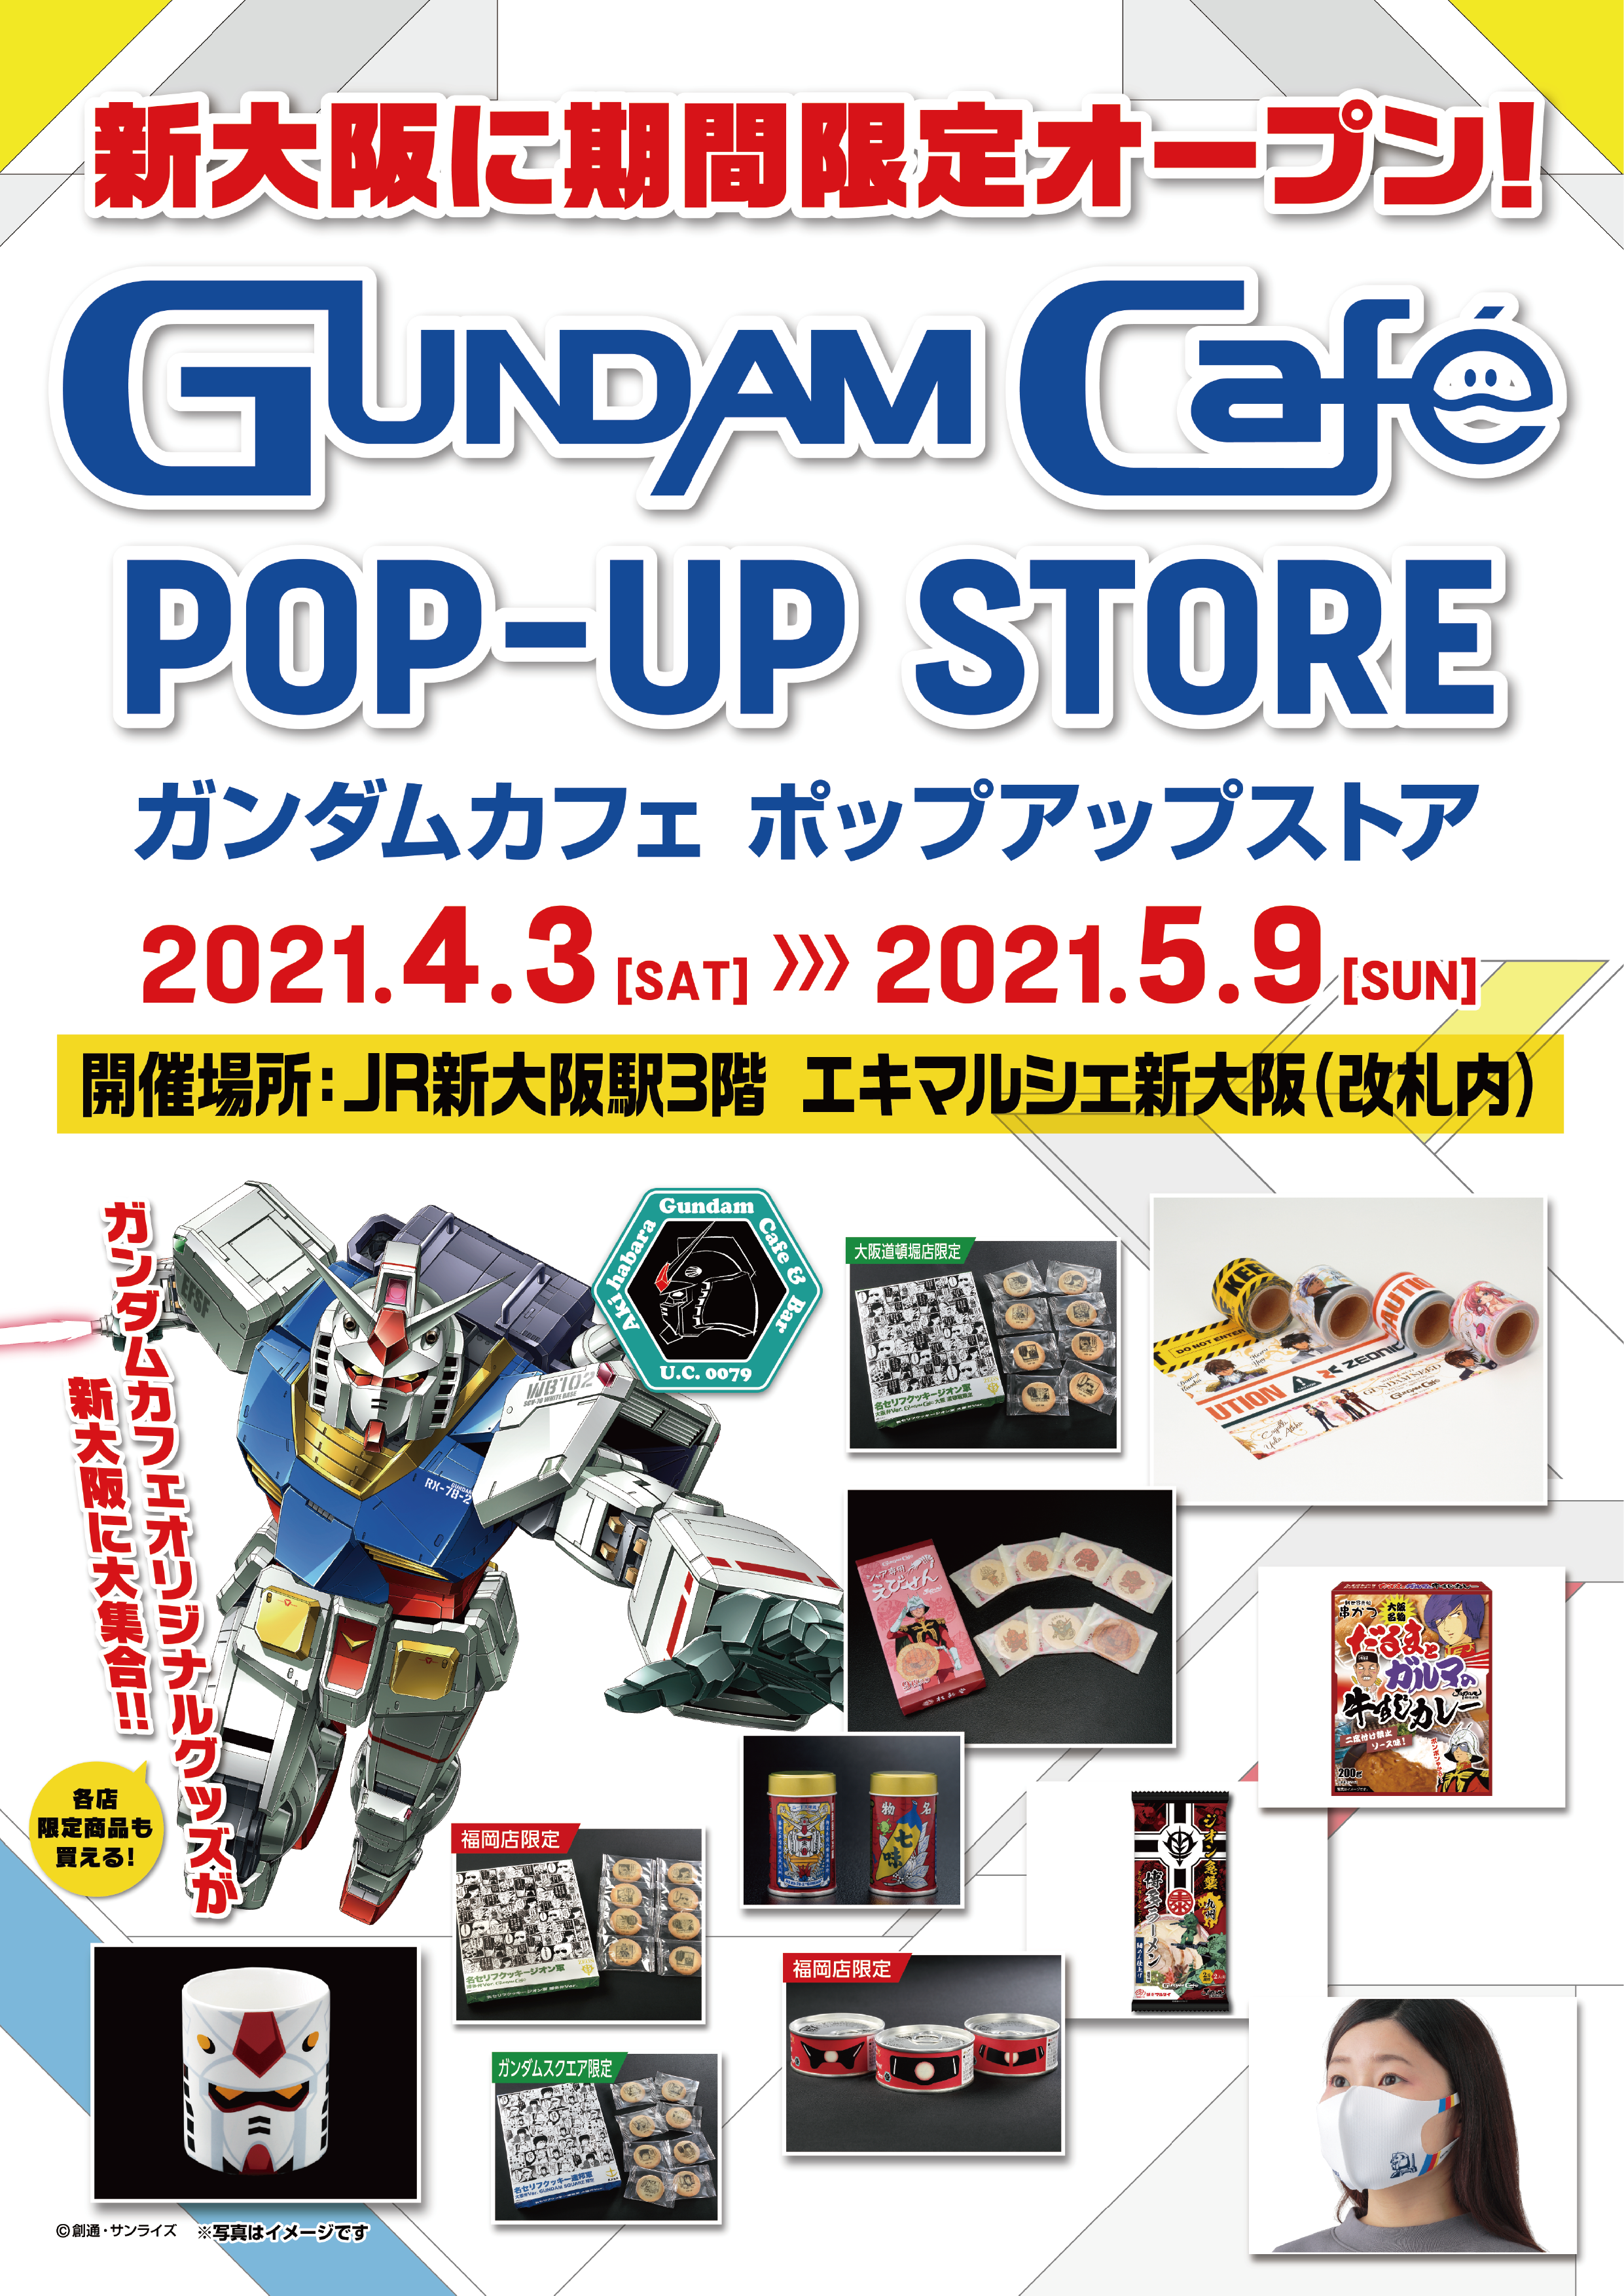 Gundam Cafe Pop Up Store 新大阪 4月3日 土 Jr新大阪駅3階 エキマルシェ新大阪 に期間限定オープン 株式会社ヘソプロダクションのプレスリリース